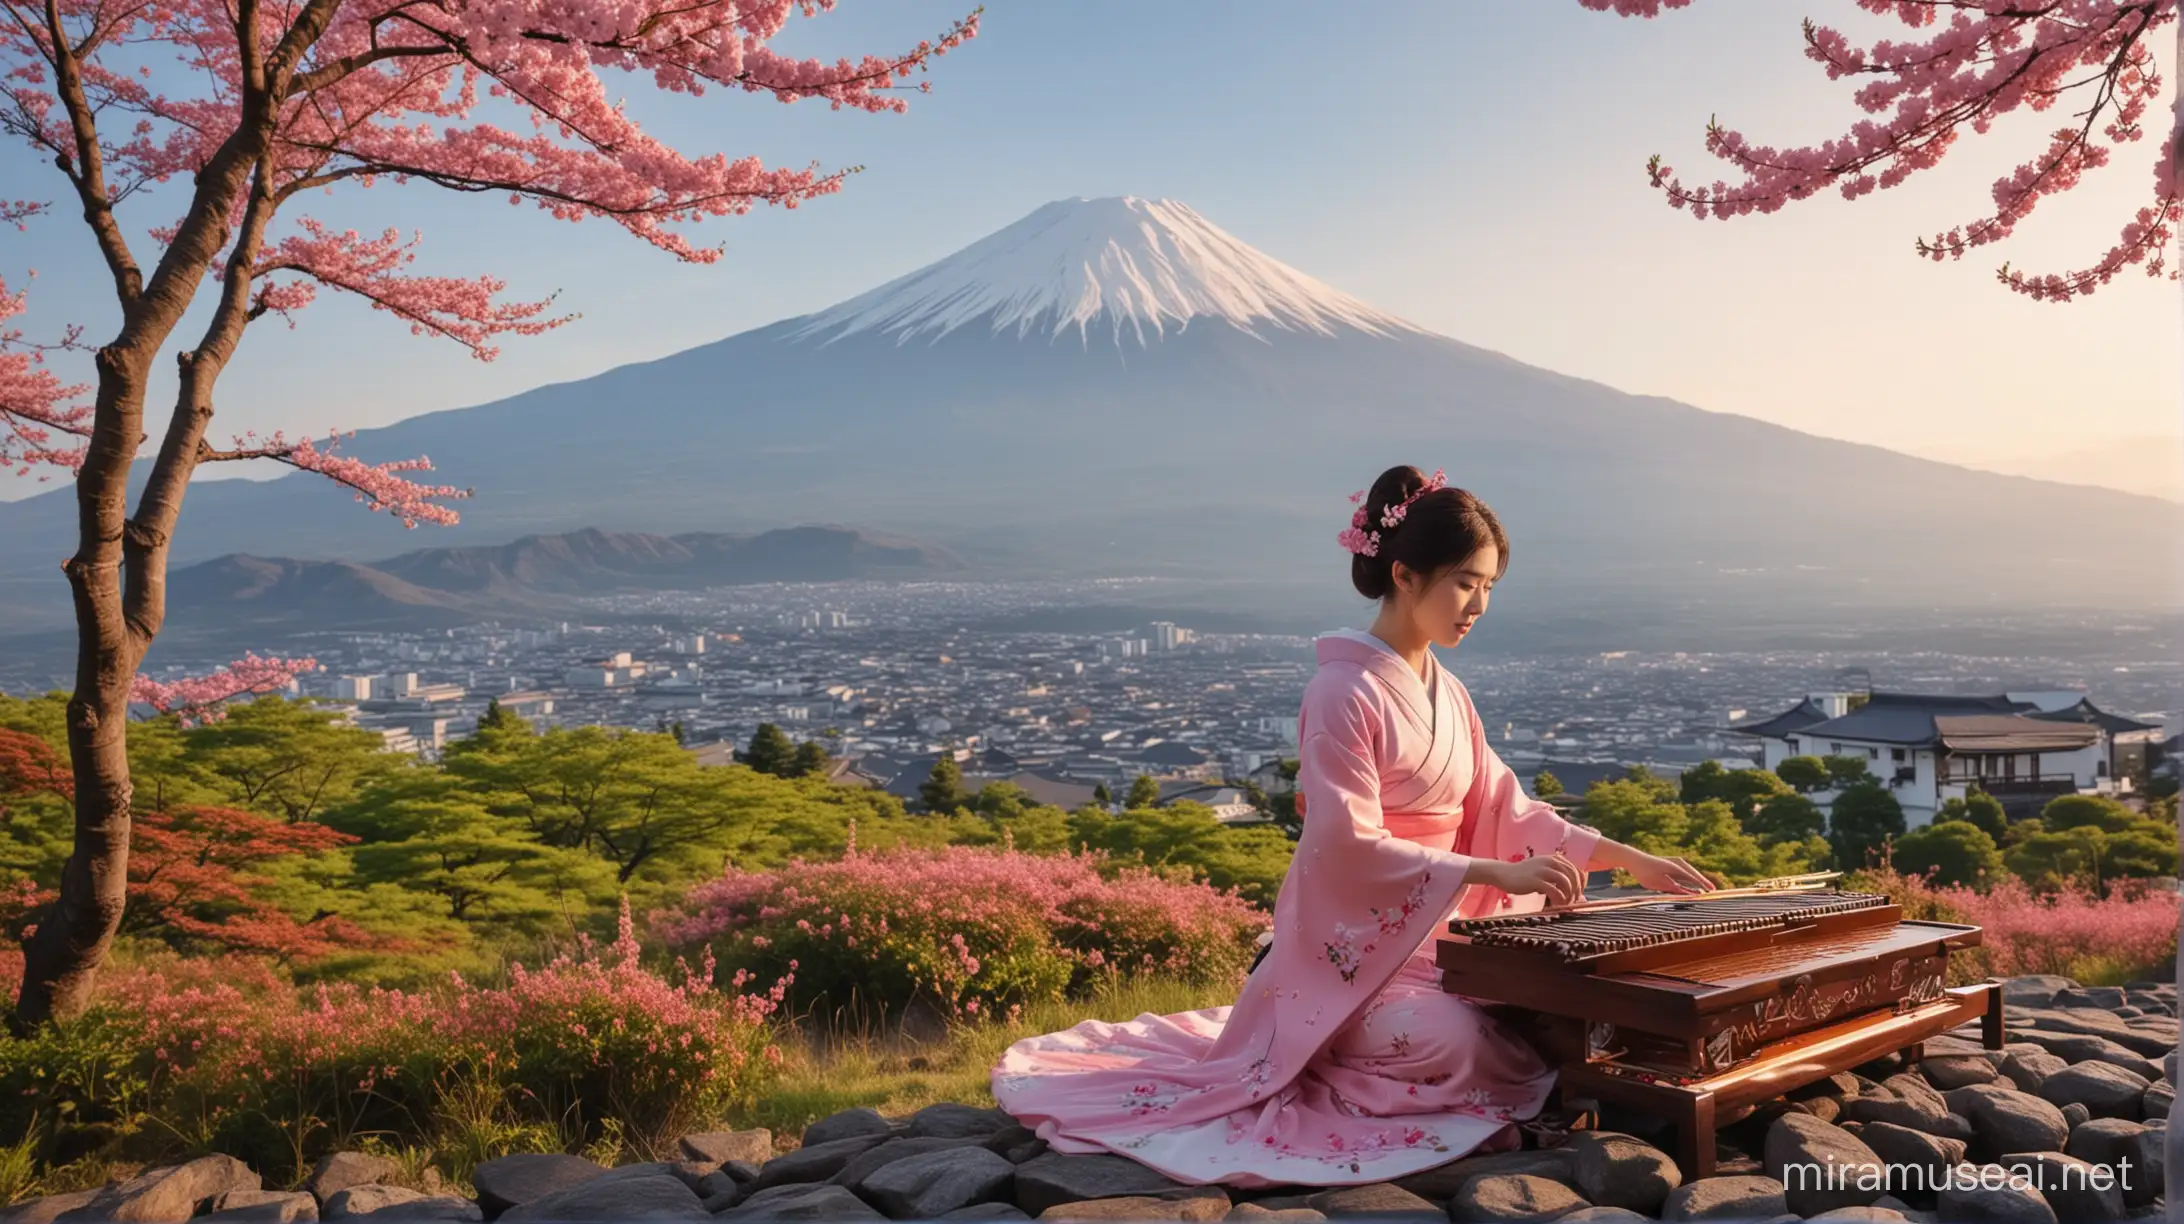 Japanese Beauty Playing Koto Music by Mount Fuji